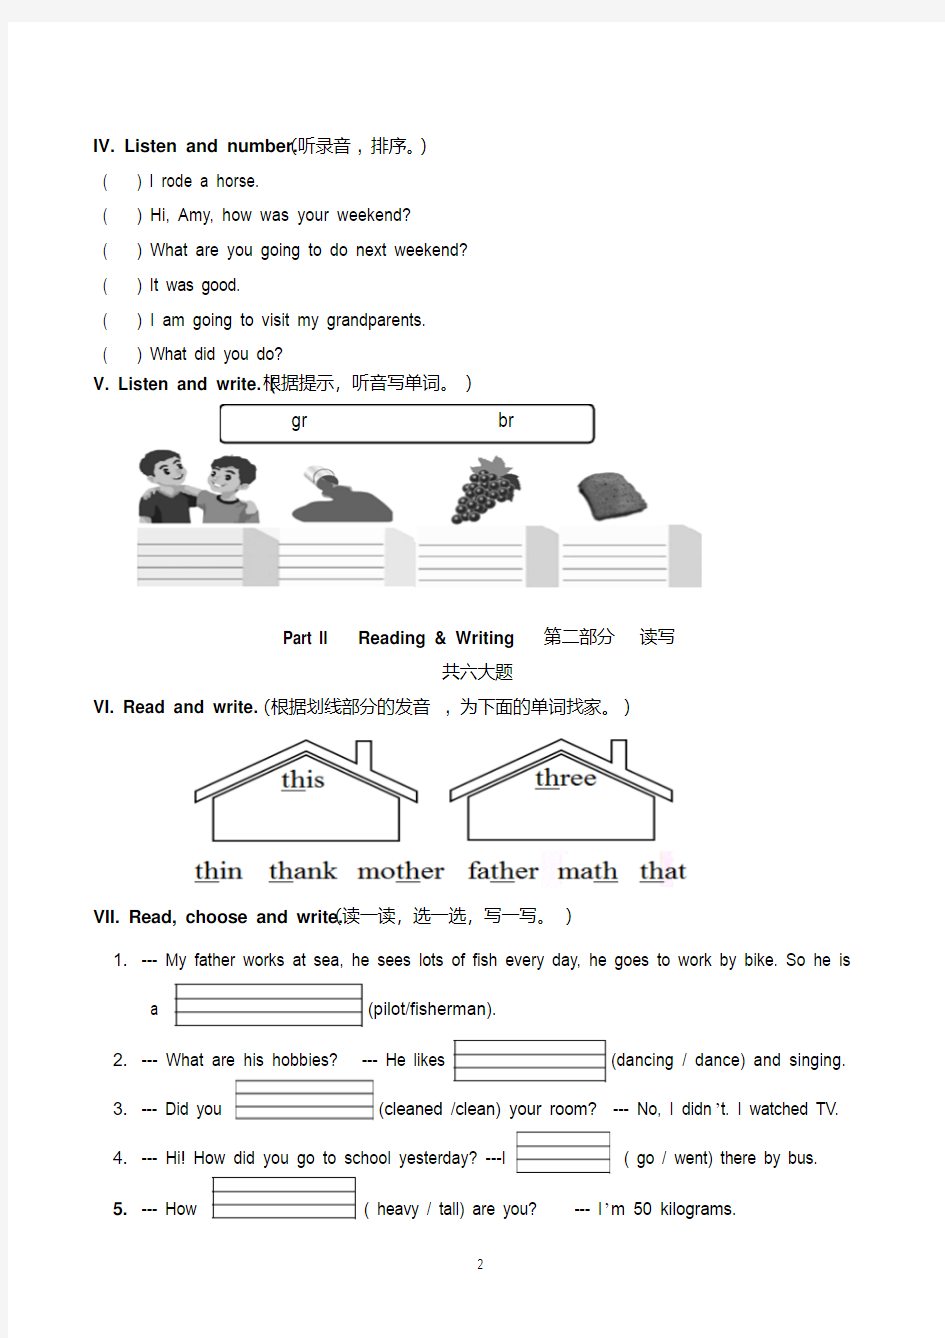 六年级小升初英语试卷含听力材料及答案(共3套)